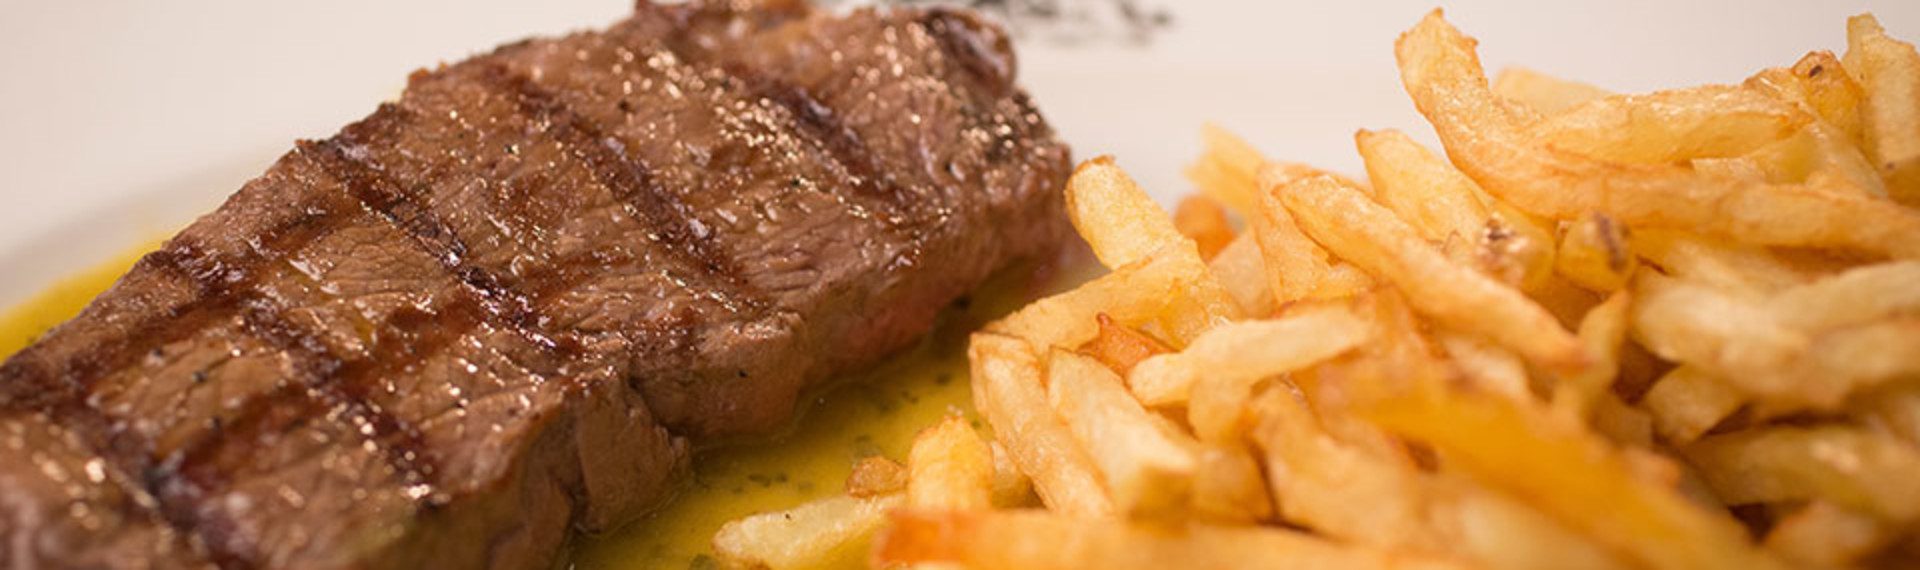 Repas steak frites à Bordeaux : réservez votre resto sur EVG.fr